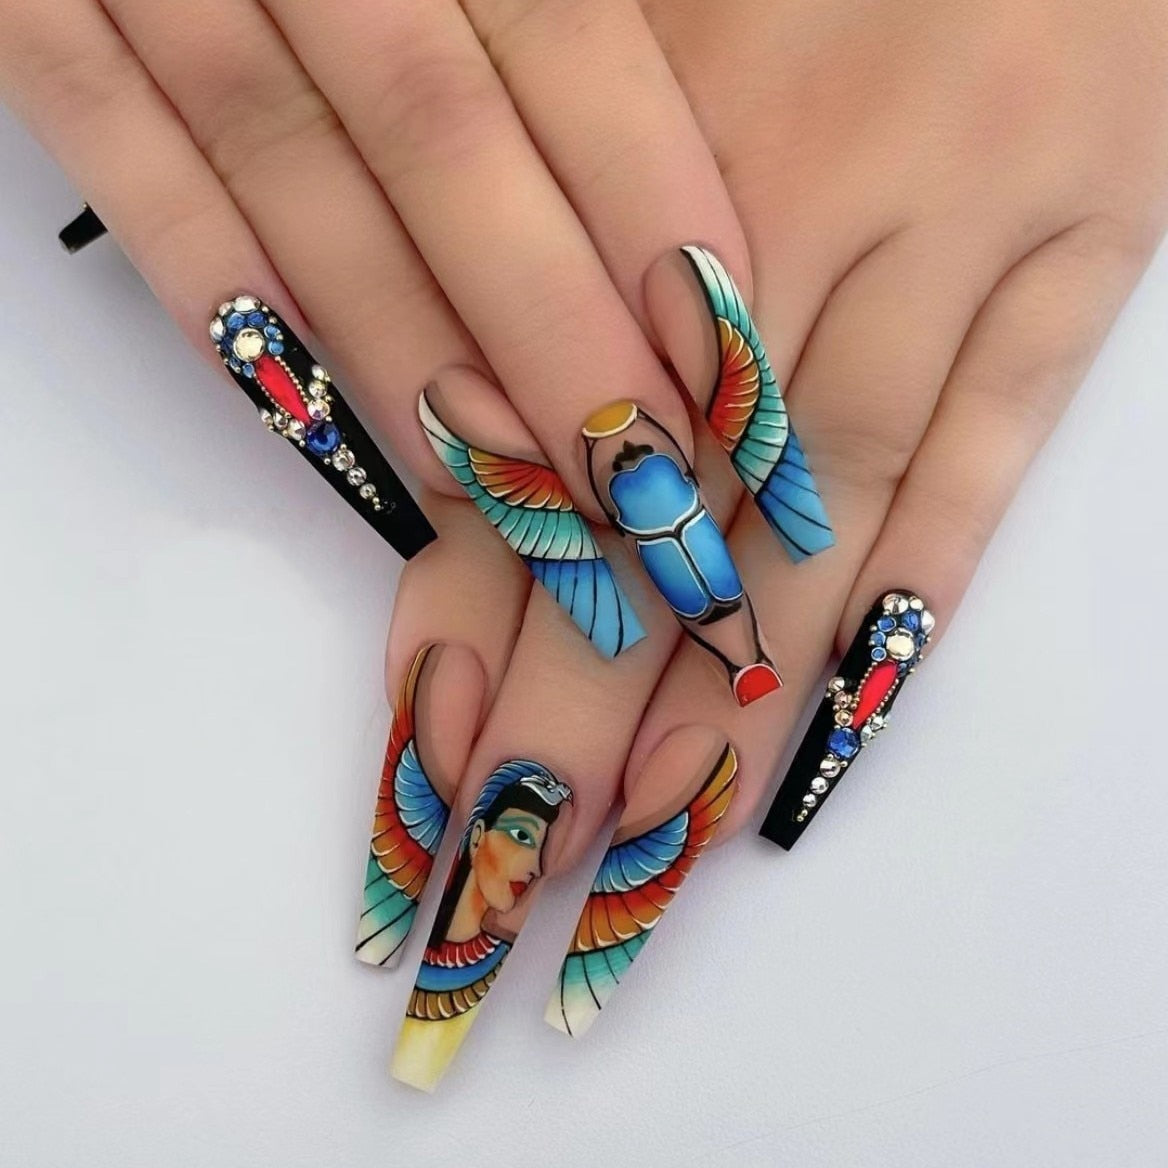 3D Fake Nails Peacock Girl Designs French Long Tipin Tips Нажатие на искусственные онглы советы Diy Manicure поставки ложные акрило